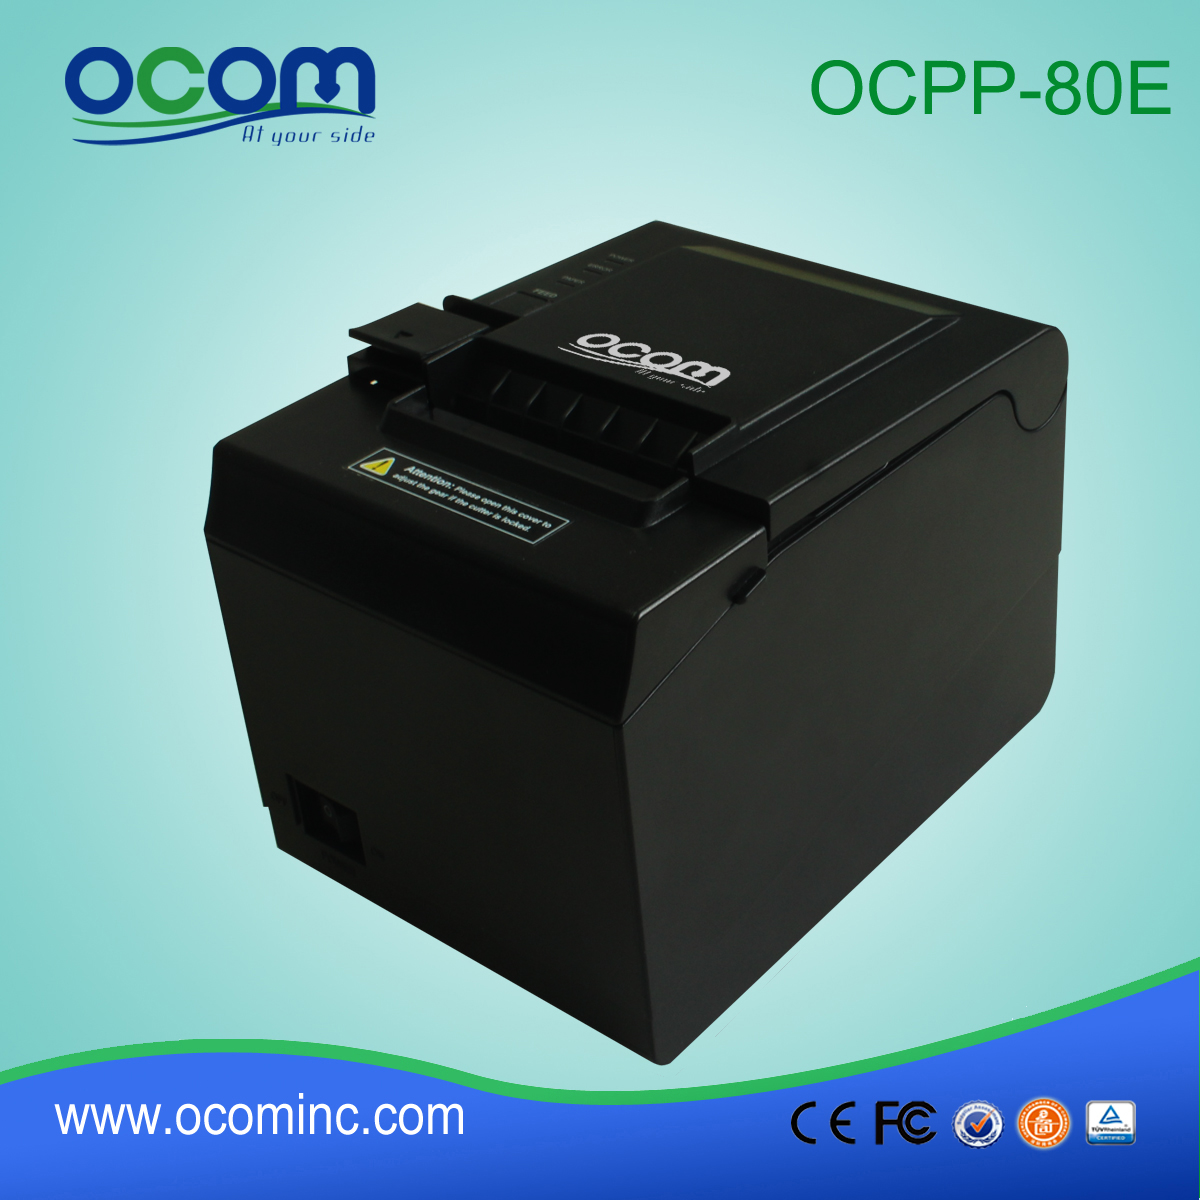 3 ίντσα pos OCPP-80E εισιτηρίων νομοσχέδιο άμεση θερμικό εκτυπωτή pos σύστημα